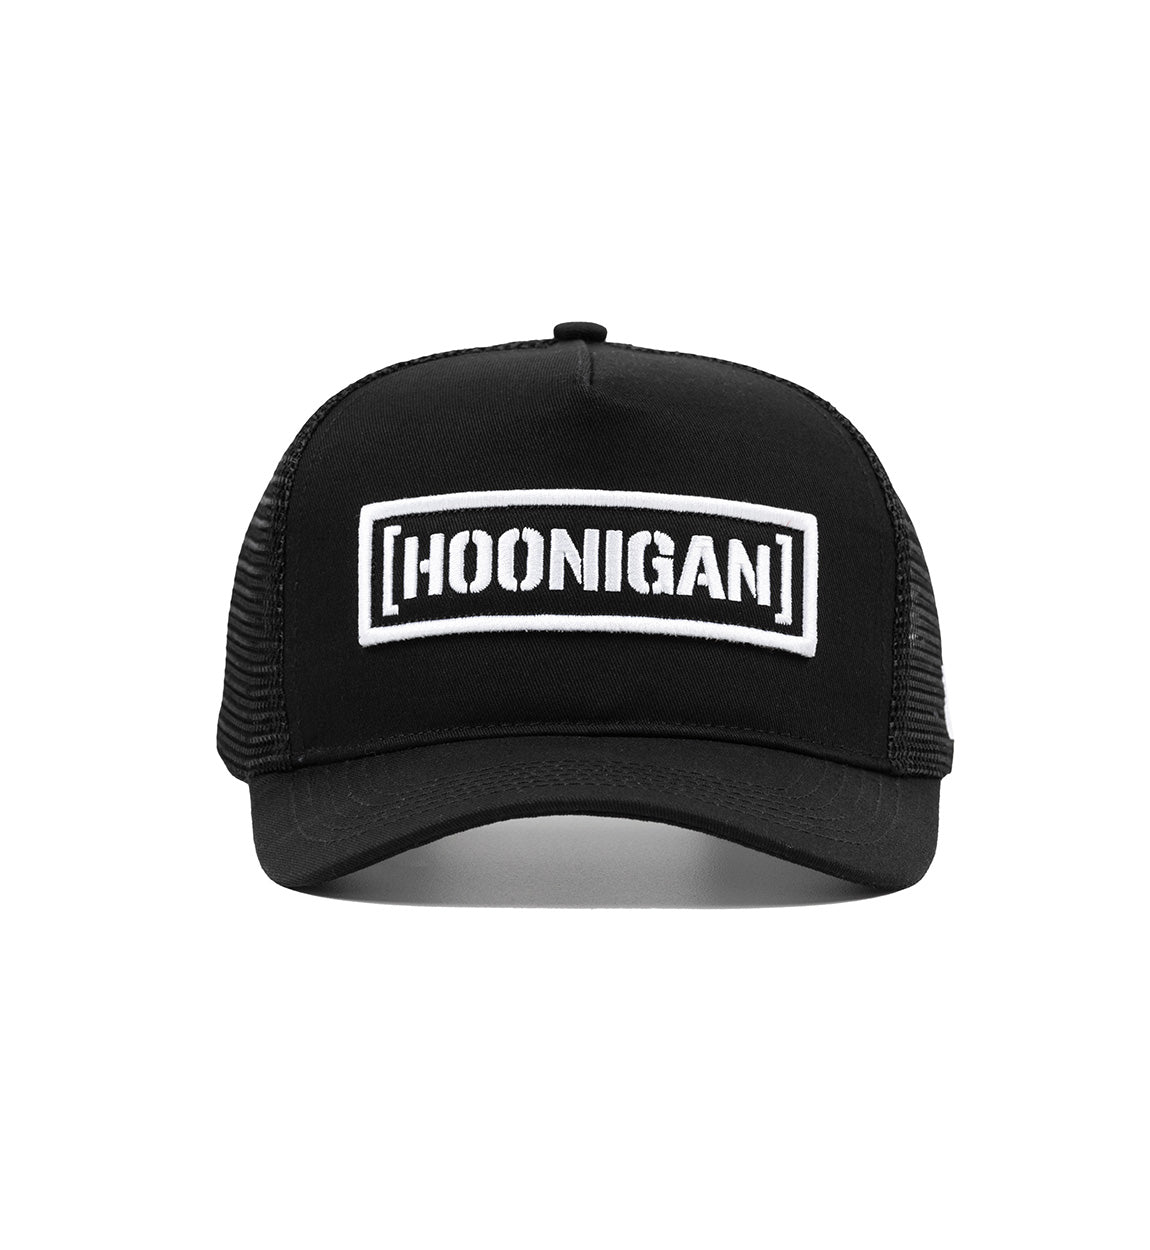 Hoonigan CENSOR BAR CURVED Trucker Hat